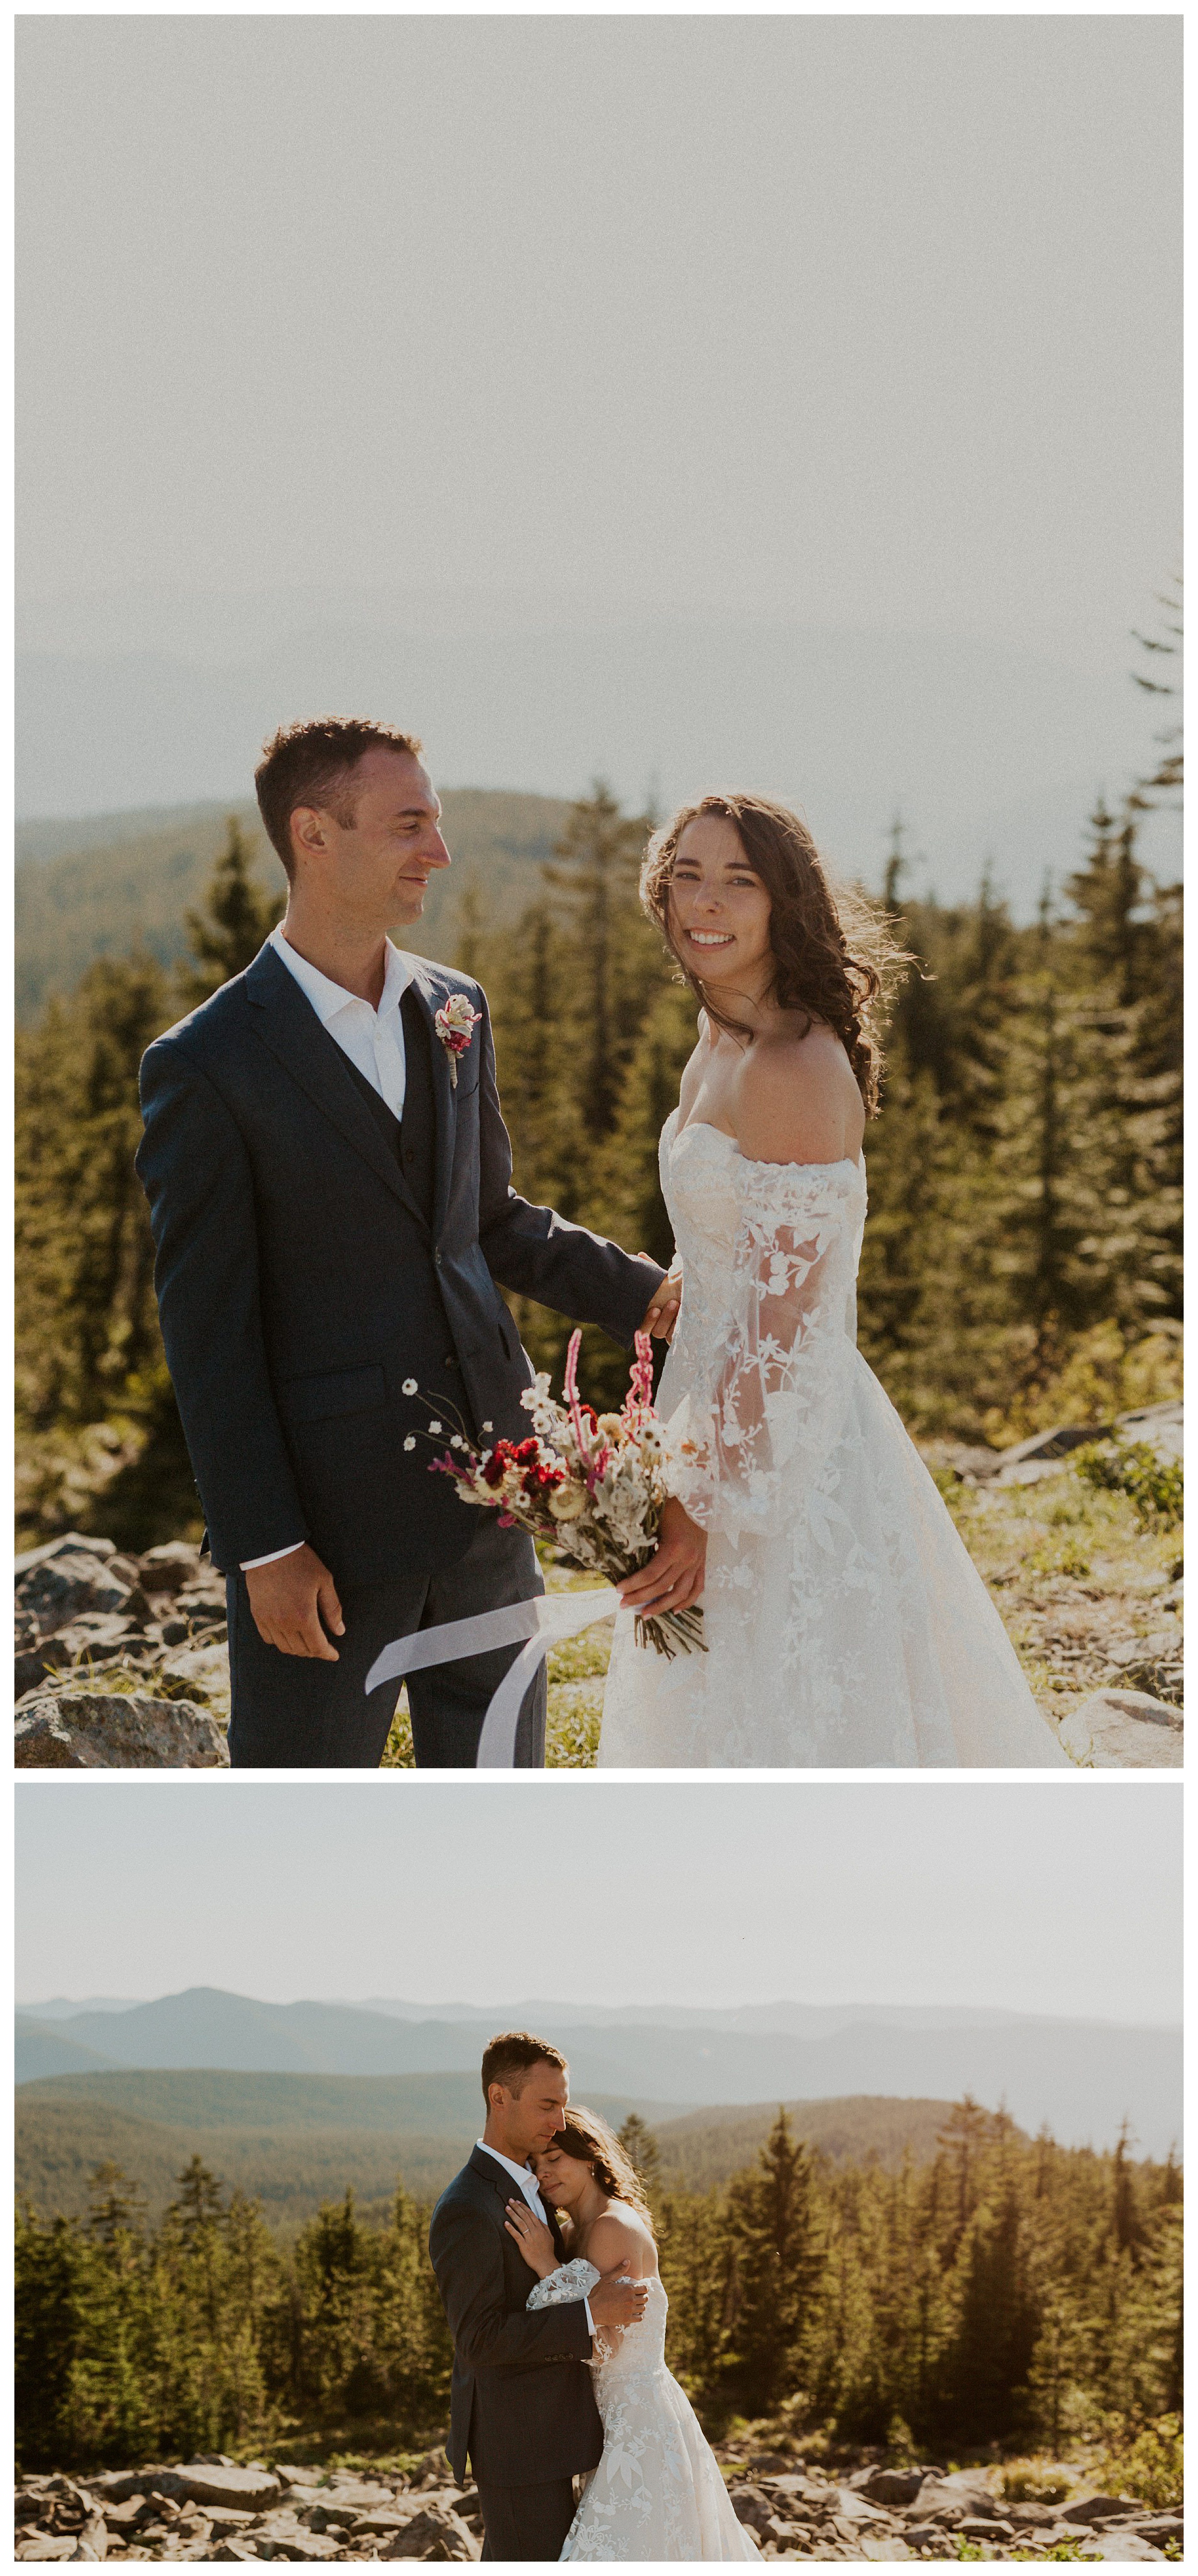 bride and groom smiling mount hood landscape

